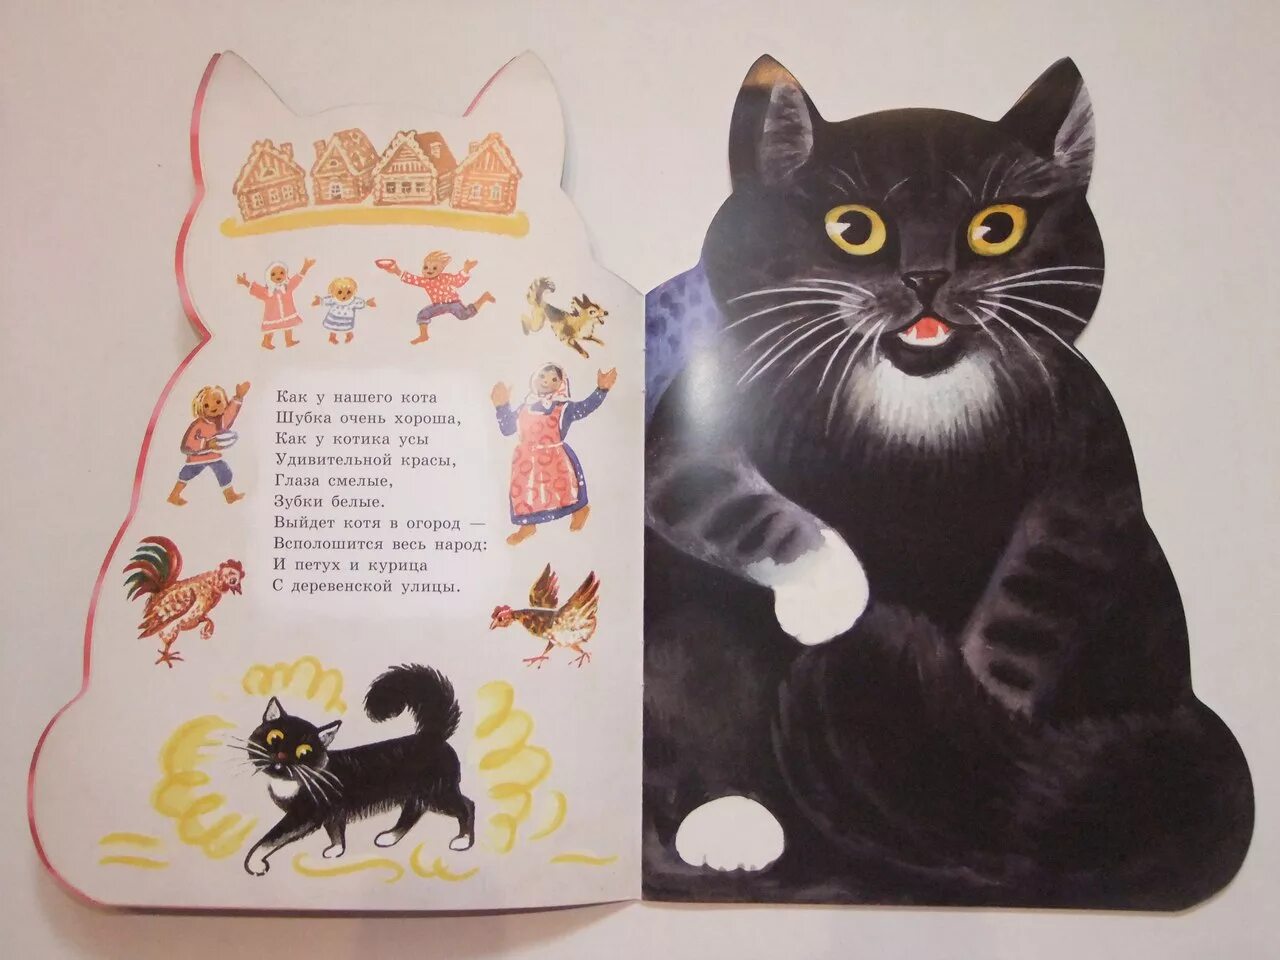 Произведения о котах. Книжки про котиков. Книги о котах и кошках для детей. Стих про кошку для детей. Сказки про котят для детей